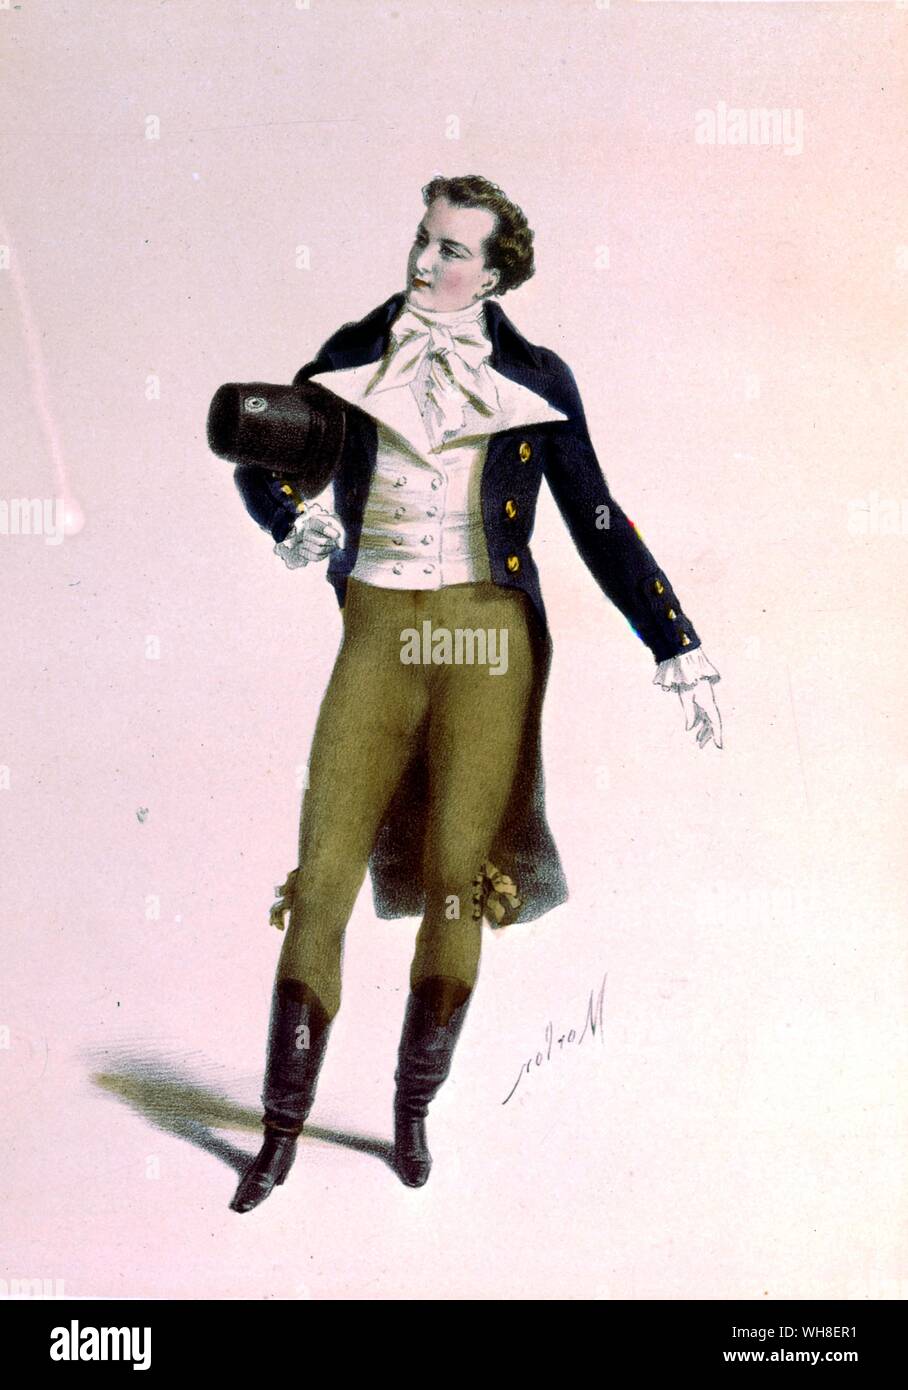 L'attore Bressant come Humbert in Le Lion Amoureux (il leone in amore), costumi des teatri (i costumi dei teatri) 1860. Da La Vie Parisienne da Joanna Richardson (1860). Foto Stock